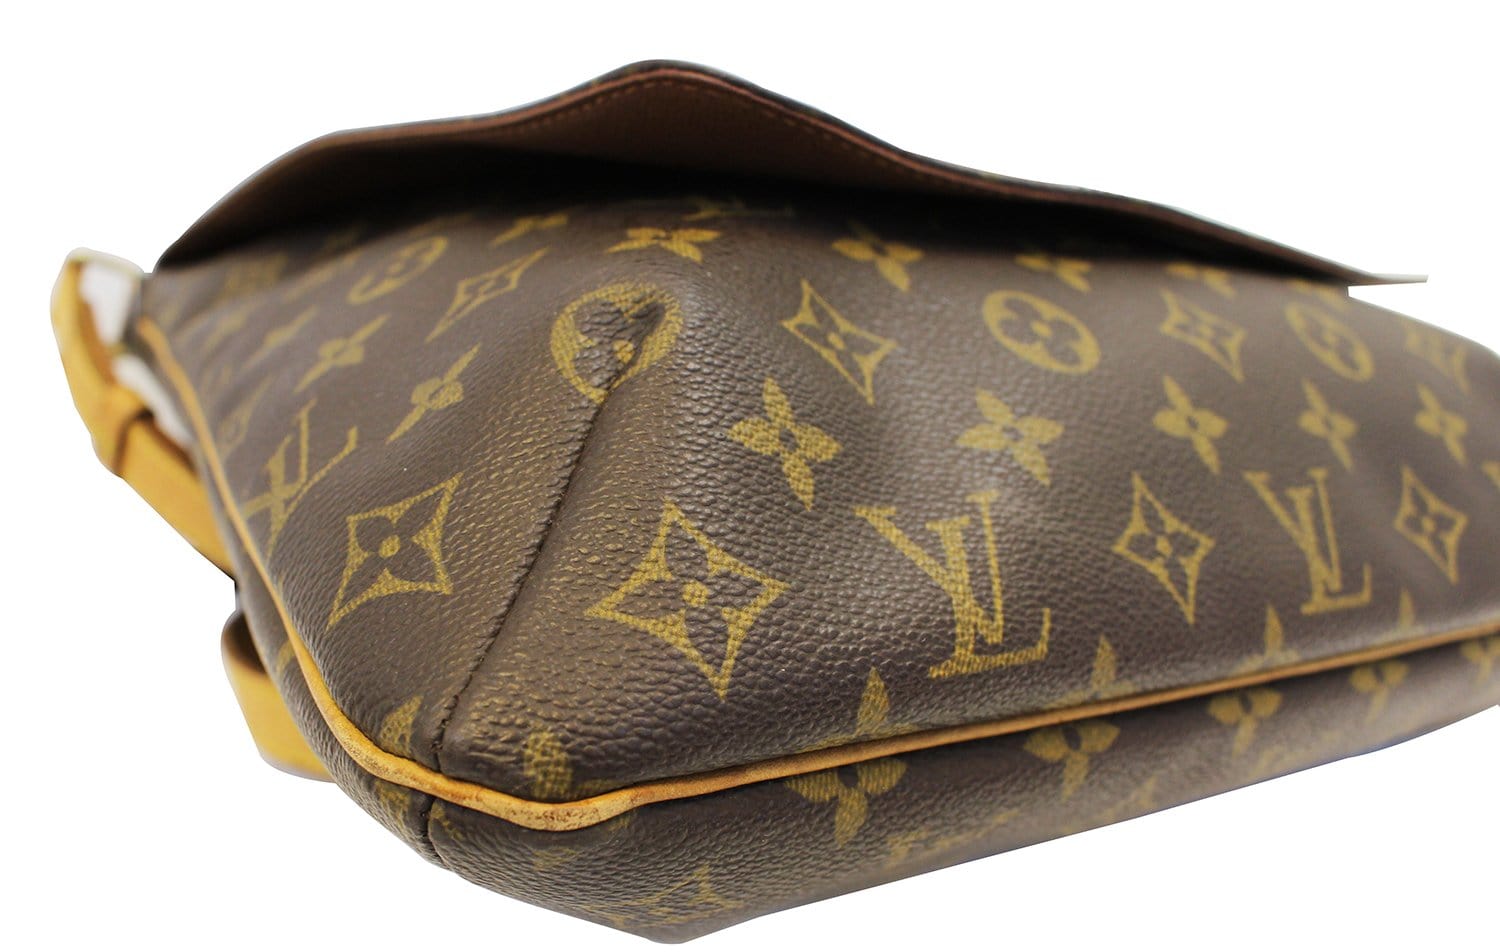 Louis Vuitton Musette Shoulder bag 377031